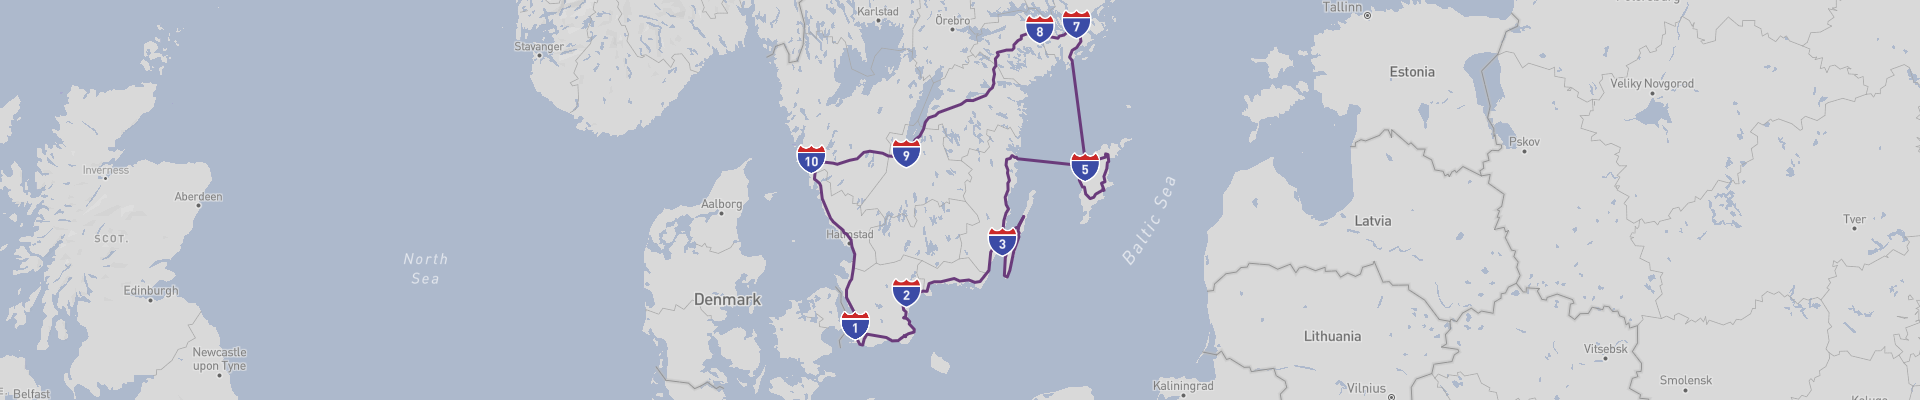 Itinéraire South Sweden 